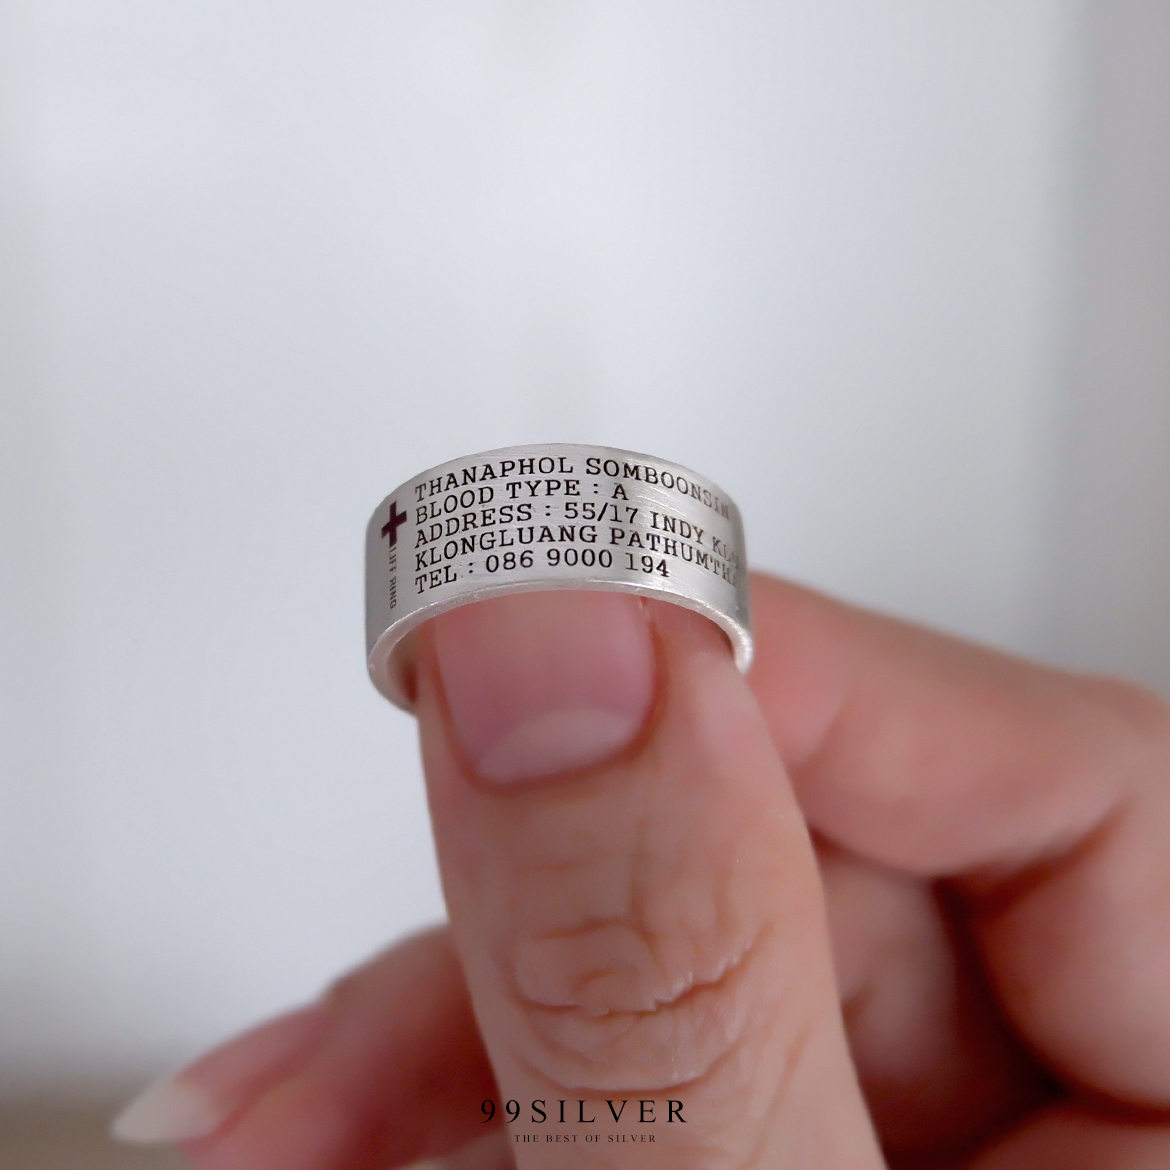 Life Ring แหวนช่วยชีวิตยามฉุกเฉิน มีข้อมูลสำคัญที่สามารถช่วยชีวิตคุณได้